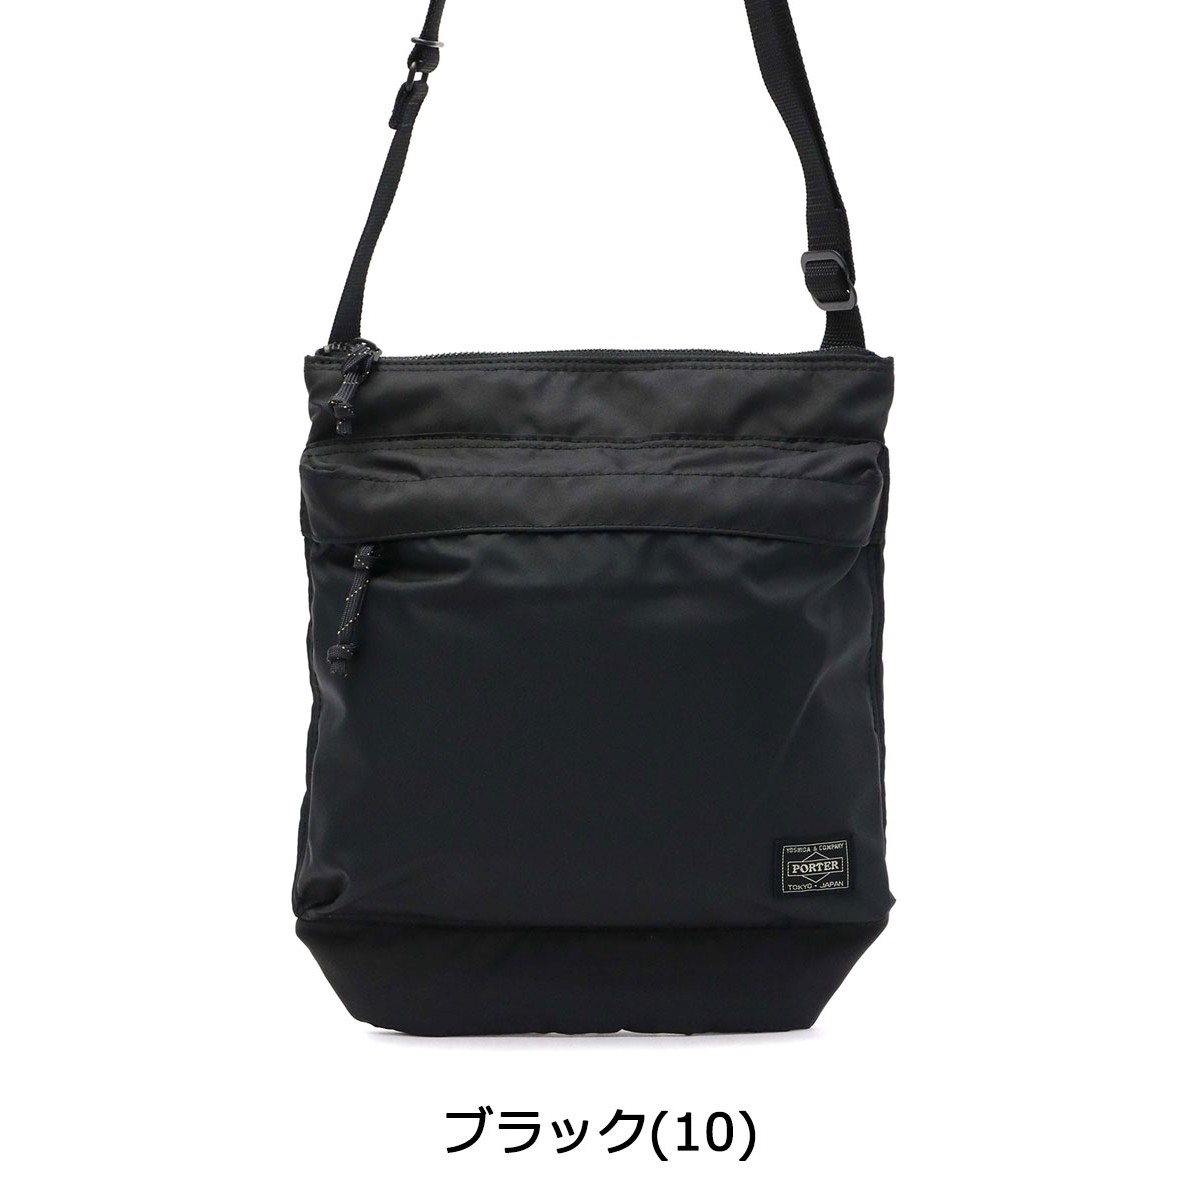  Porter force shoulder bag 855-05901 Yoshida bag PORTER FORCE SHOULDERR BAG men's lady's small brand diagonal .. light 